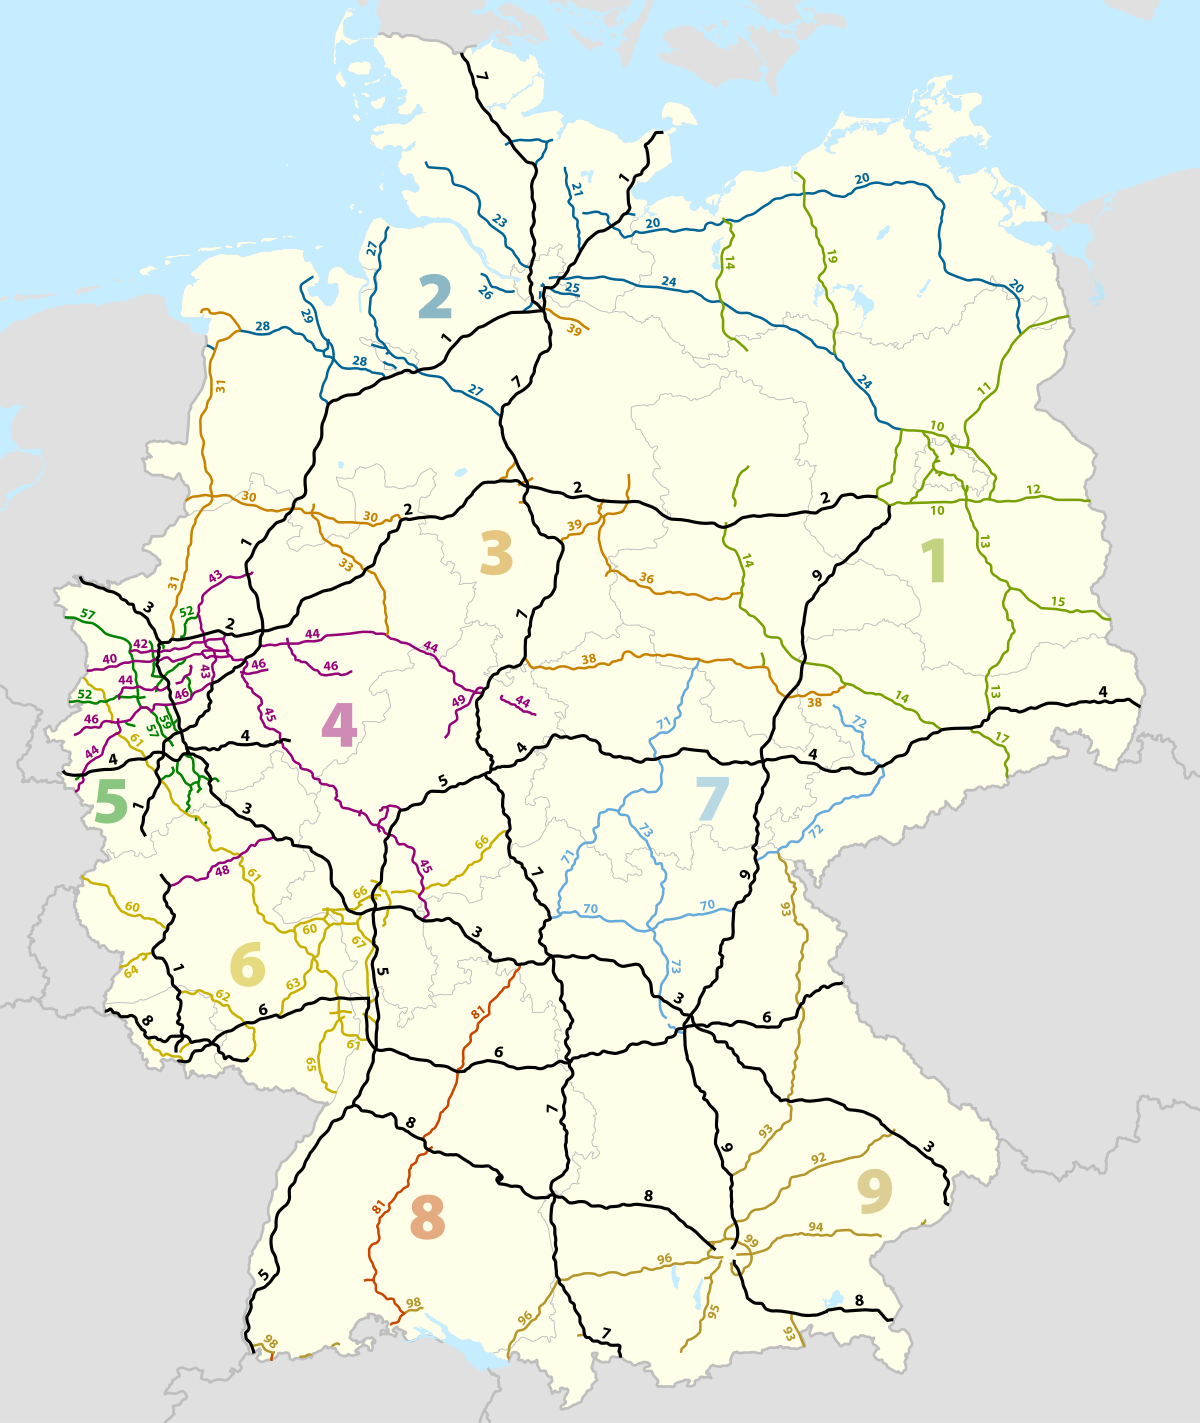 autobahnen deutschland karte mit städten Liste Der Bundesautobahnen In Deutschland Wikipedia autobahnen deutschland karte mit städten